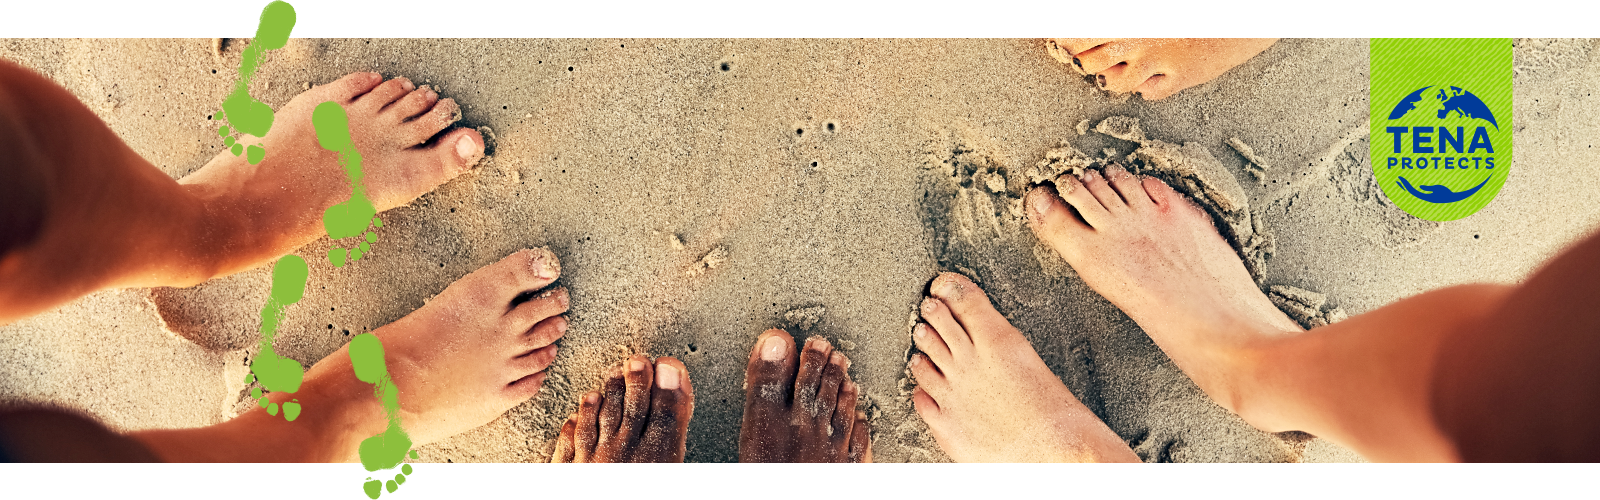 Primo piano di piedi nudi nella sabbia, insieme a un'immagine fumettistica di impronte verdi e al logo di TENA Protects.